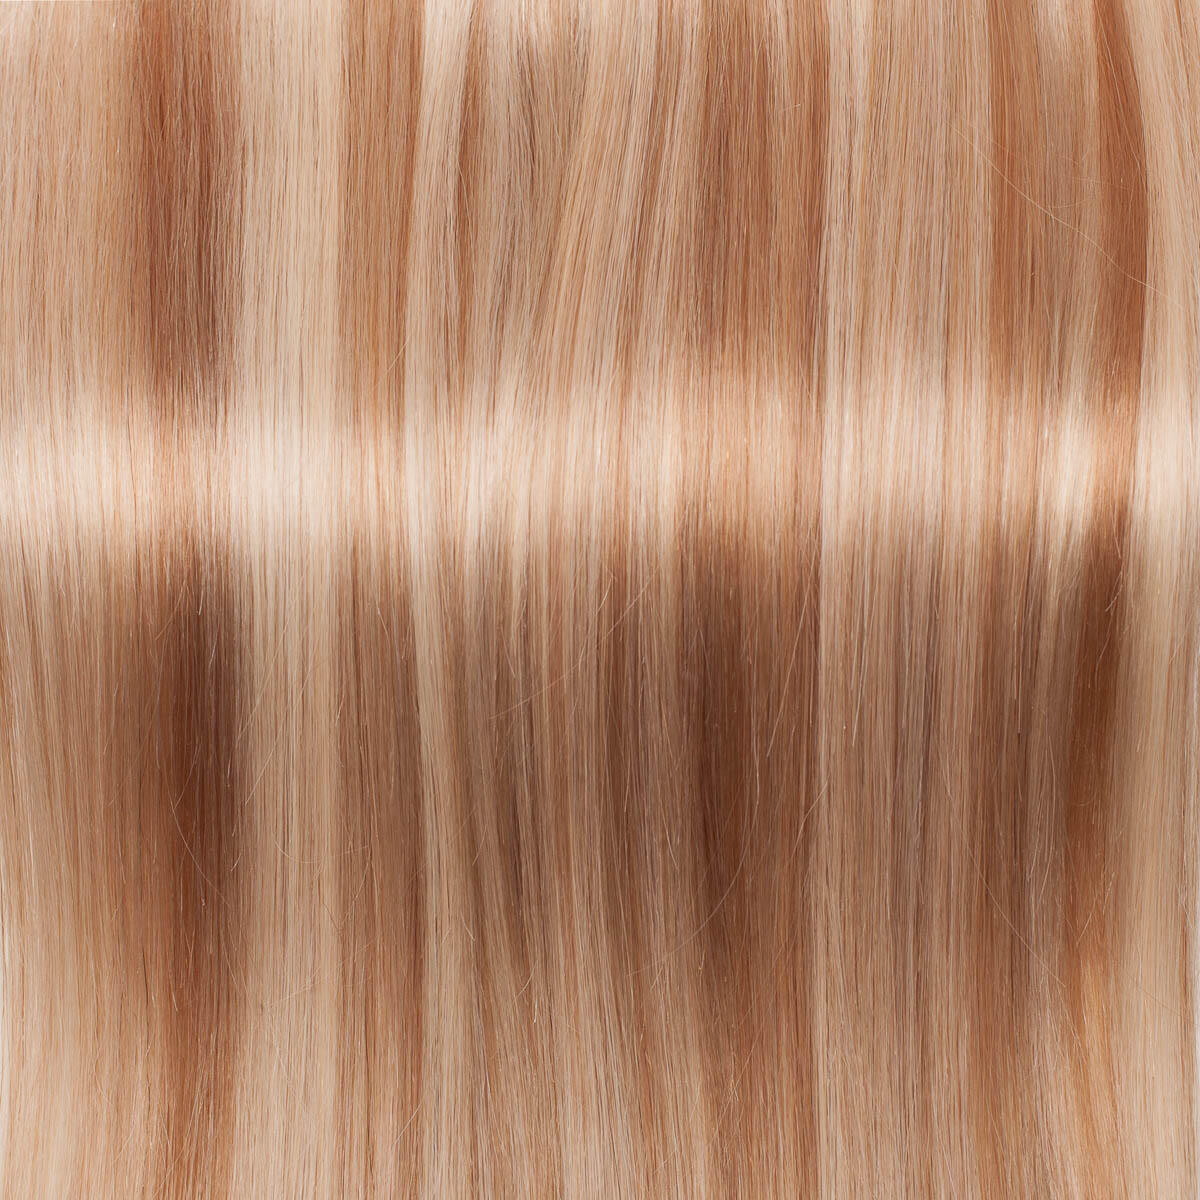 Nail Hair Premium M22 Chad Wood Blond Mix 50 cm